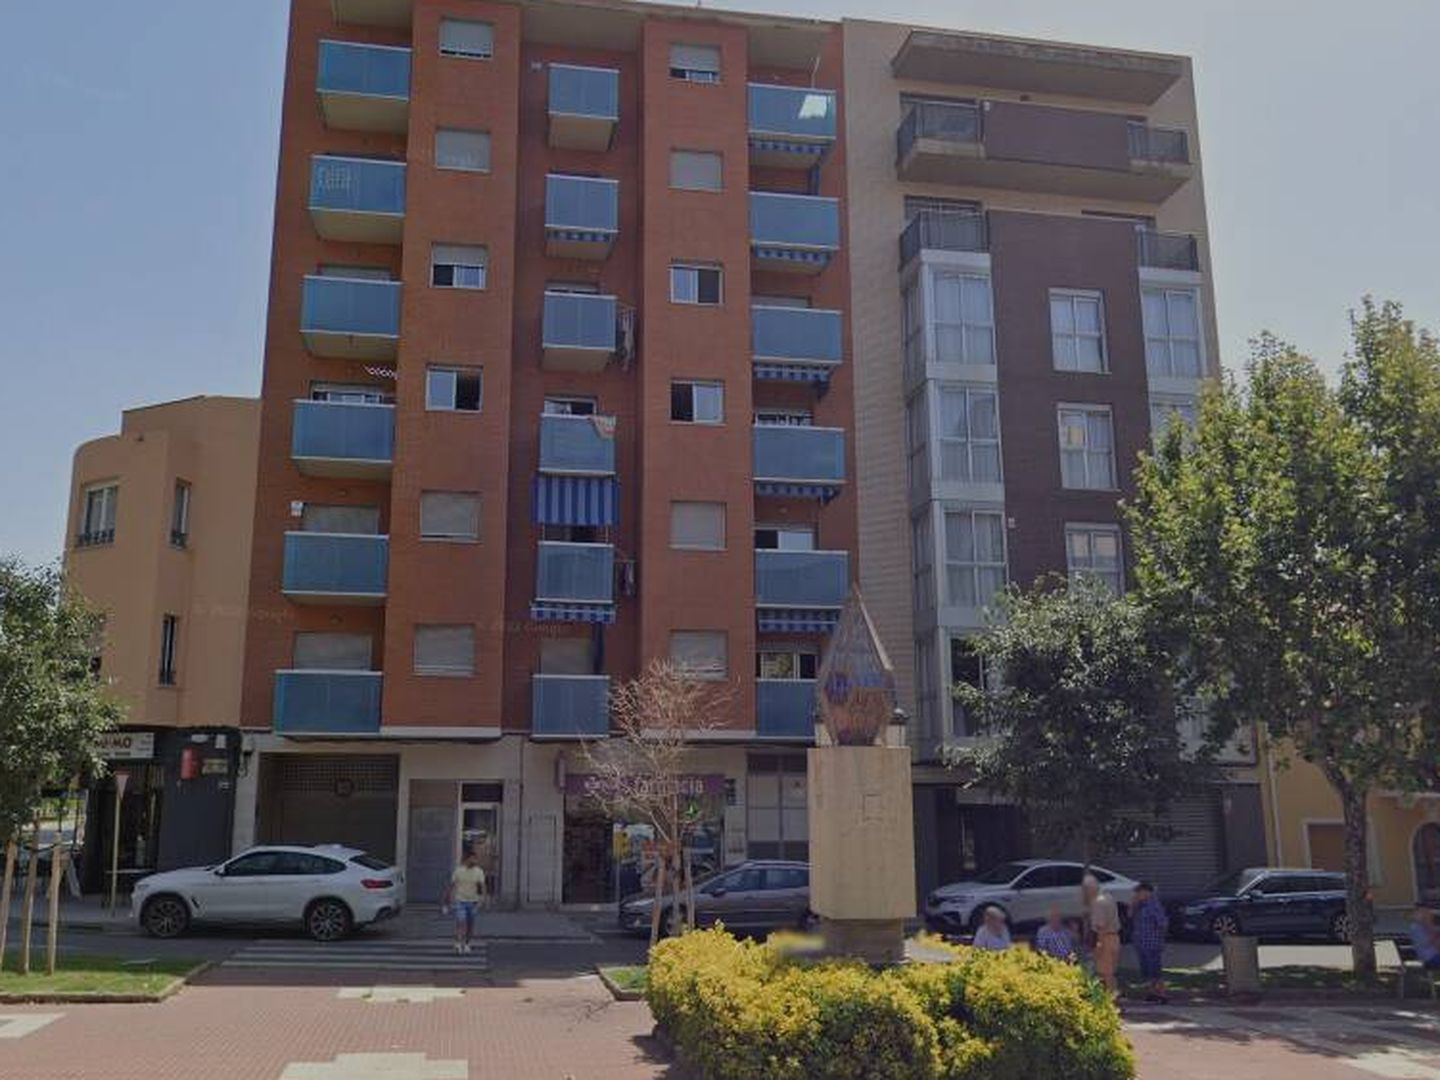 Edificio en el que se ubican los pisos objeto de subasta. (Google Maps)